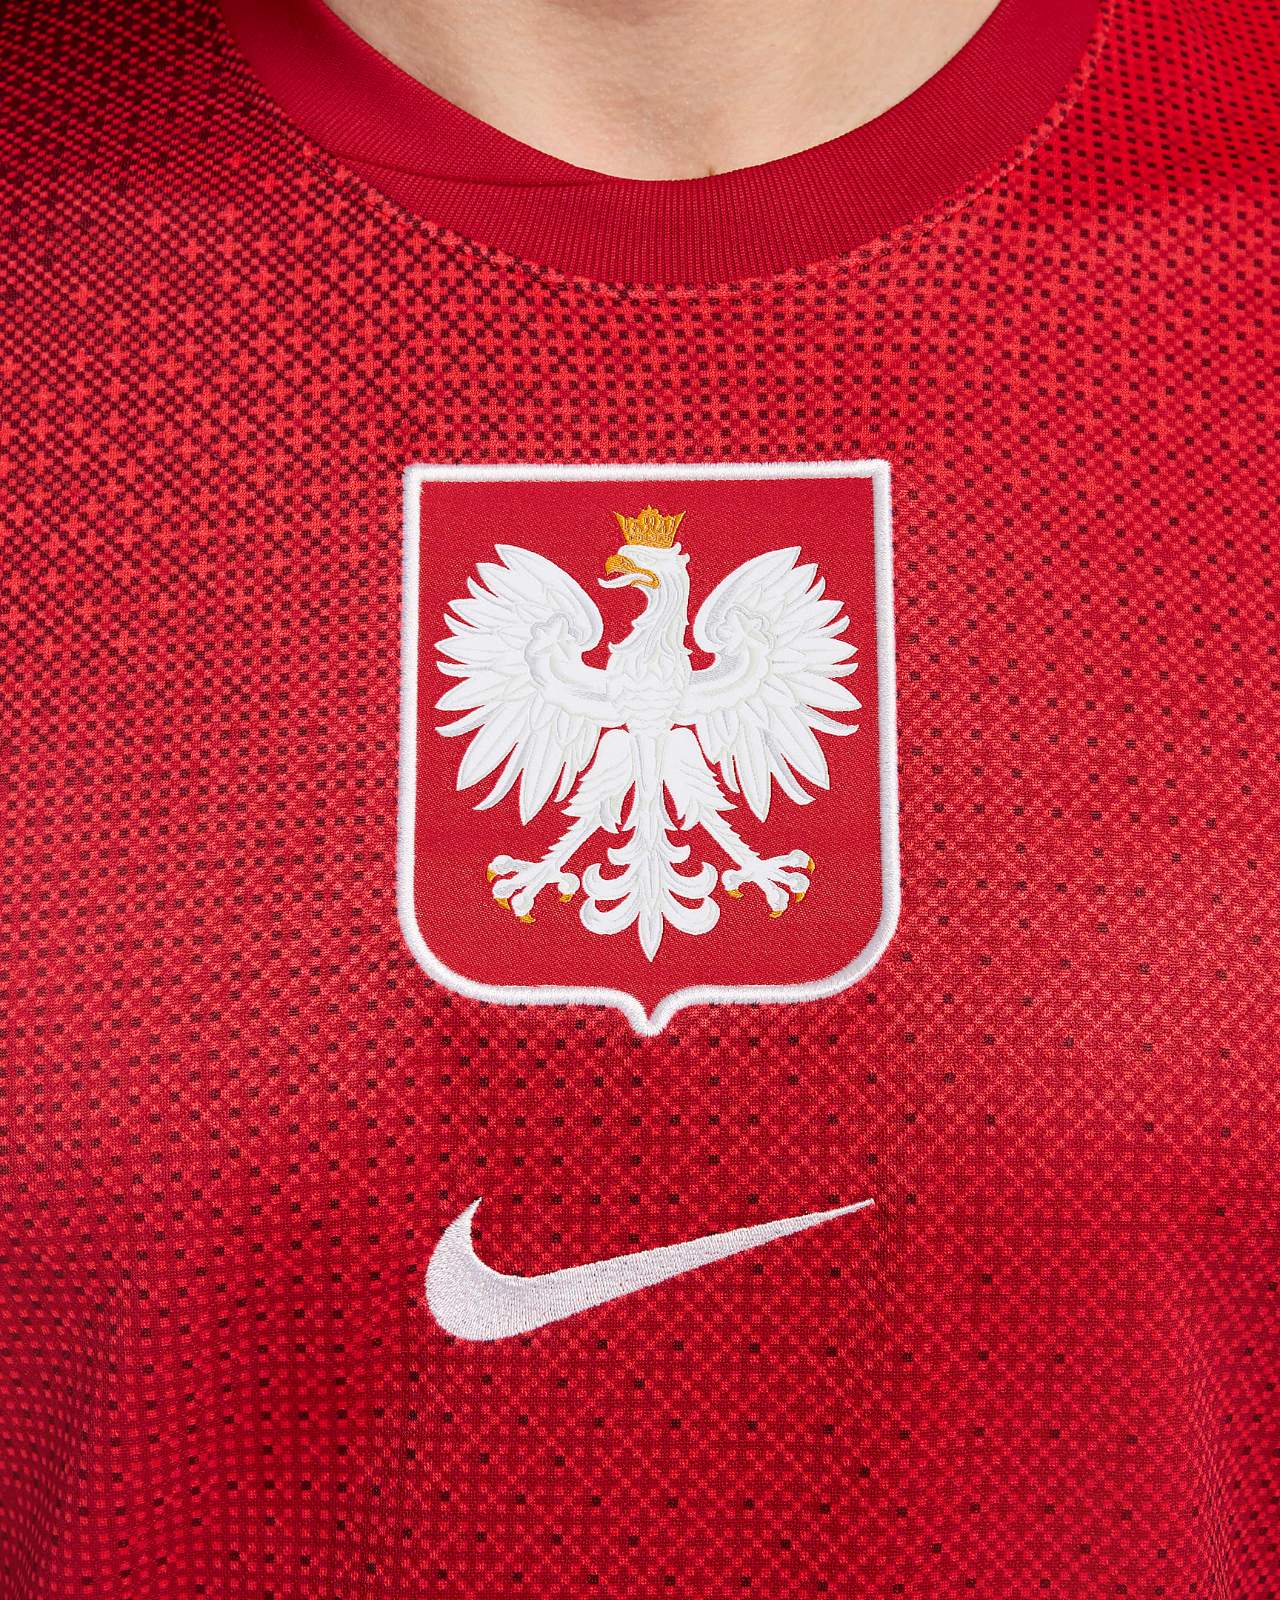 Poland 24-25 Away Shirt